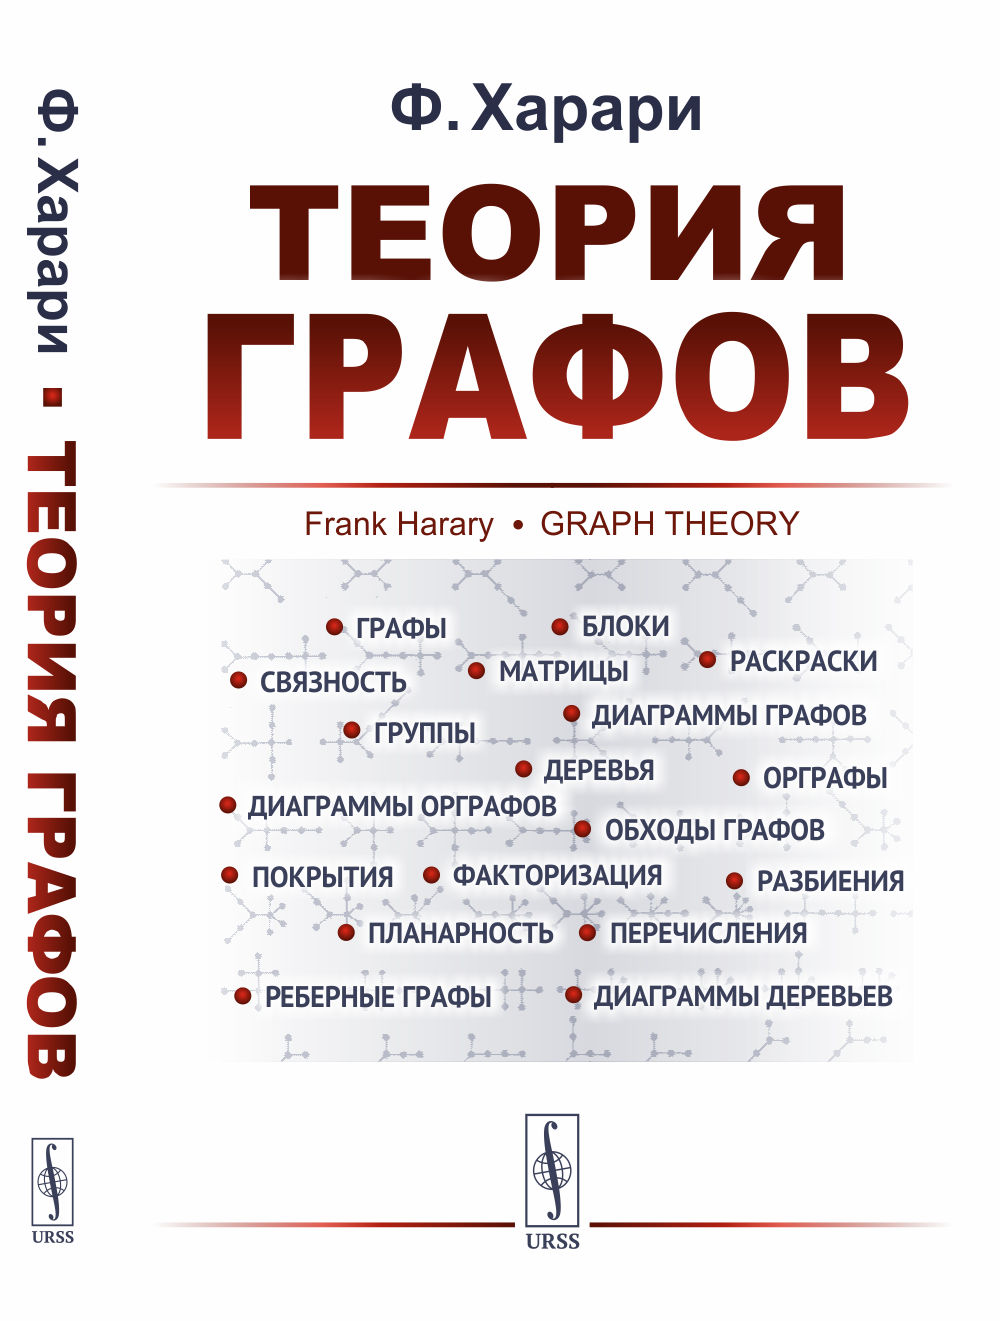 Харари Ф. Теория графов. Пер. с англ. 